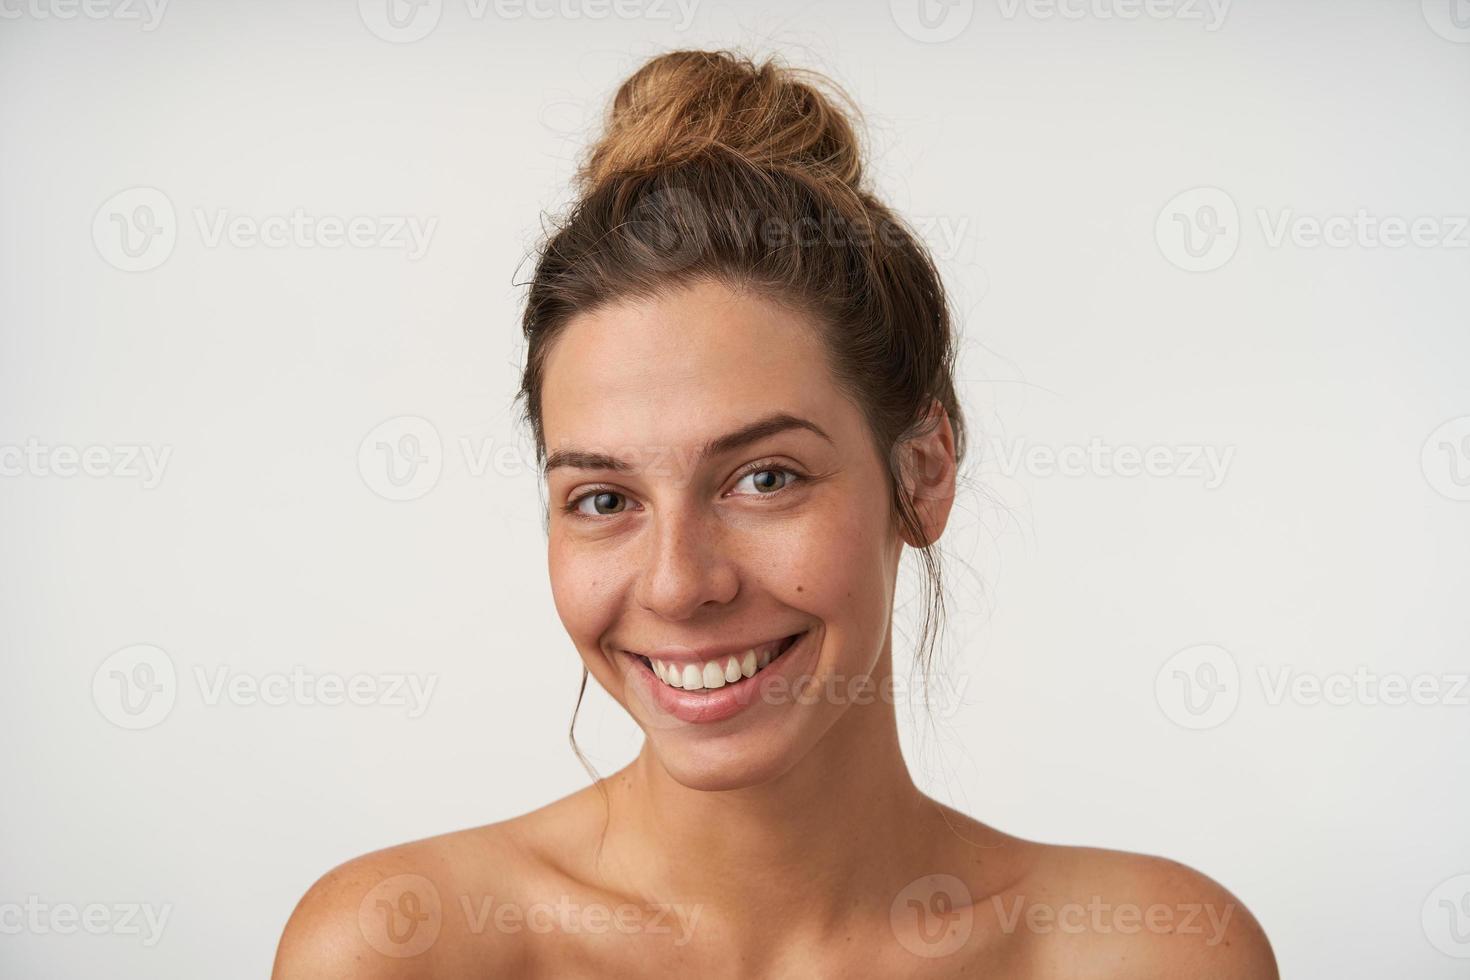 Innenporträt einer fröhlichen jungen Frau, die aufrichtig in die Kamera lächelt, ohne Make-up schön aussieht und auf weißem Hintergrund steht foto